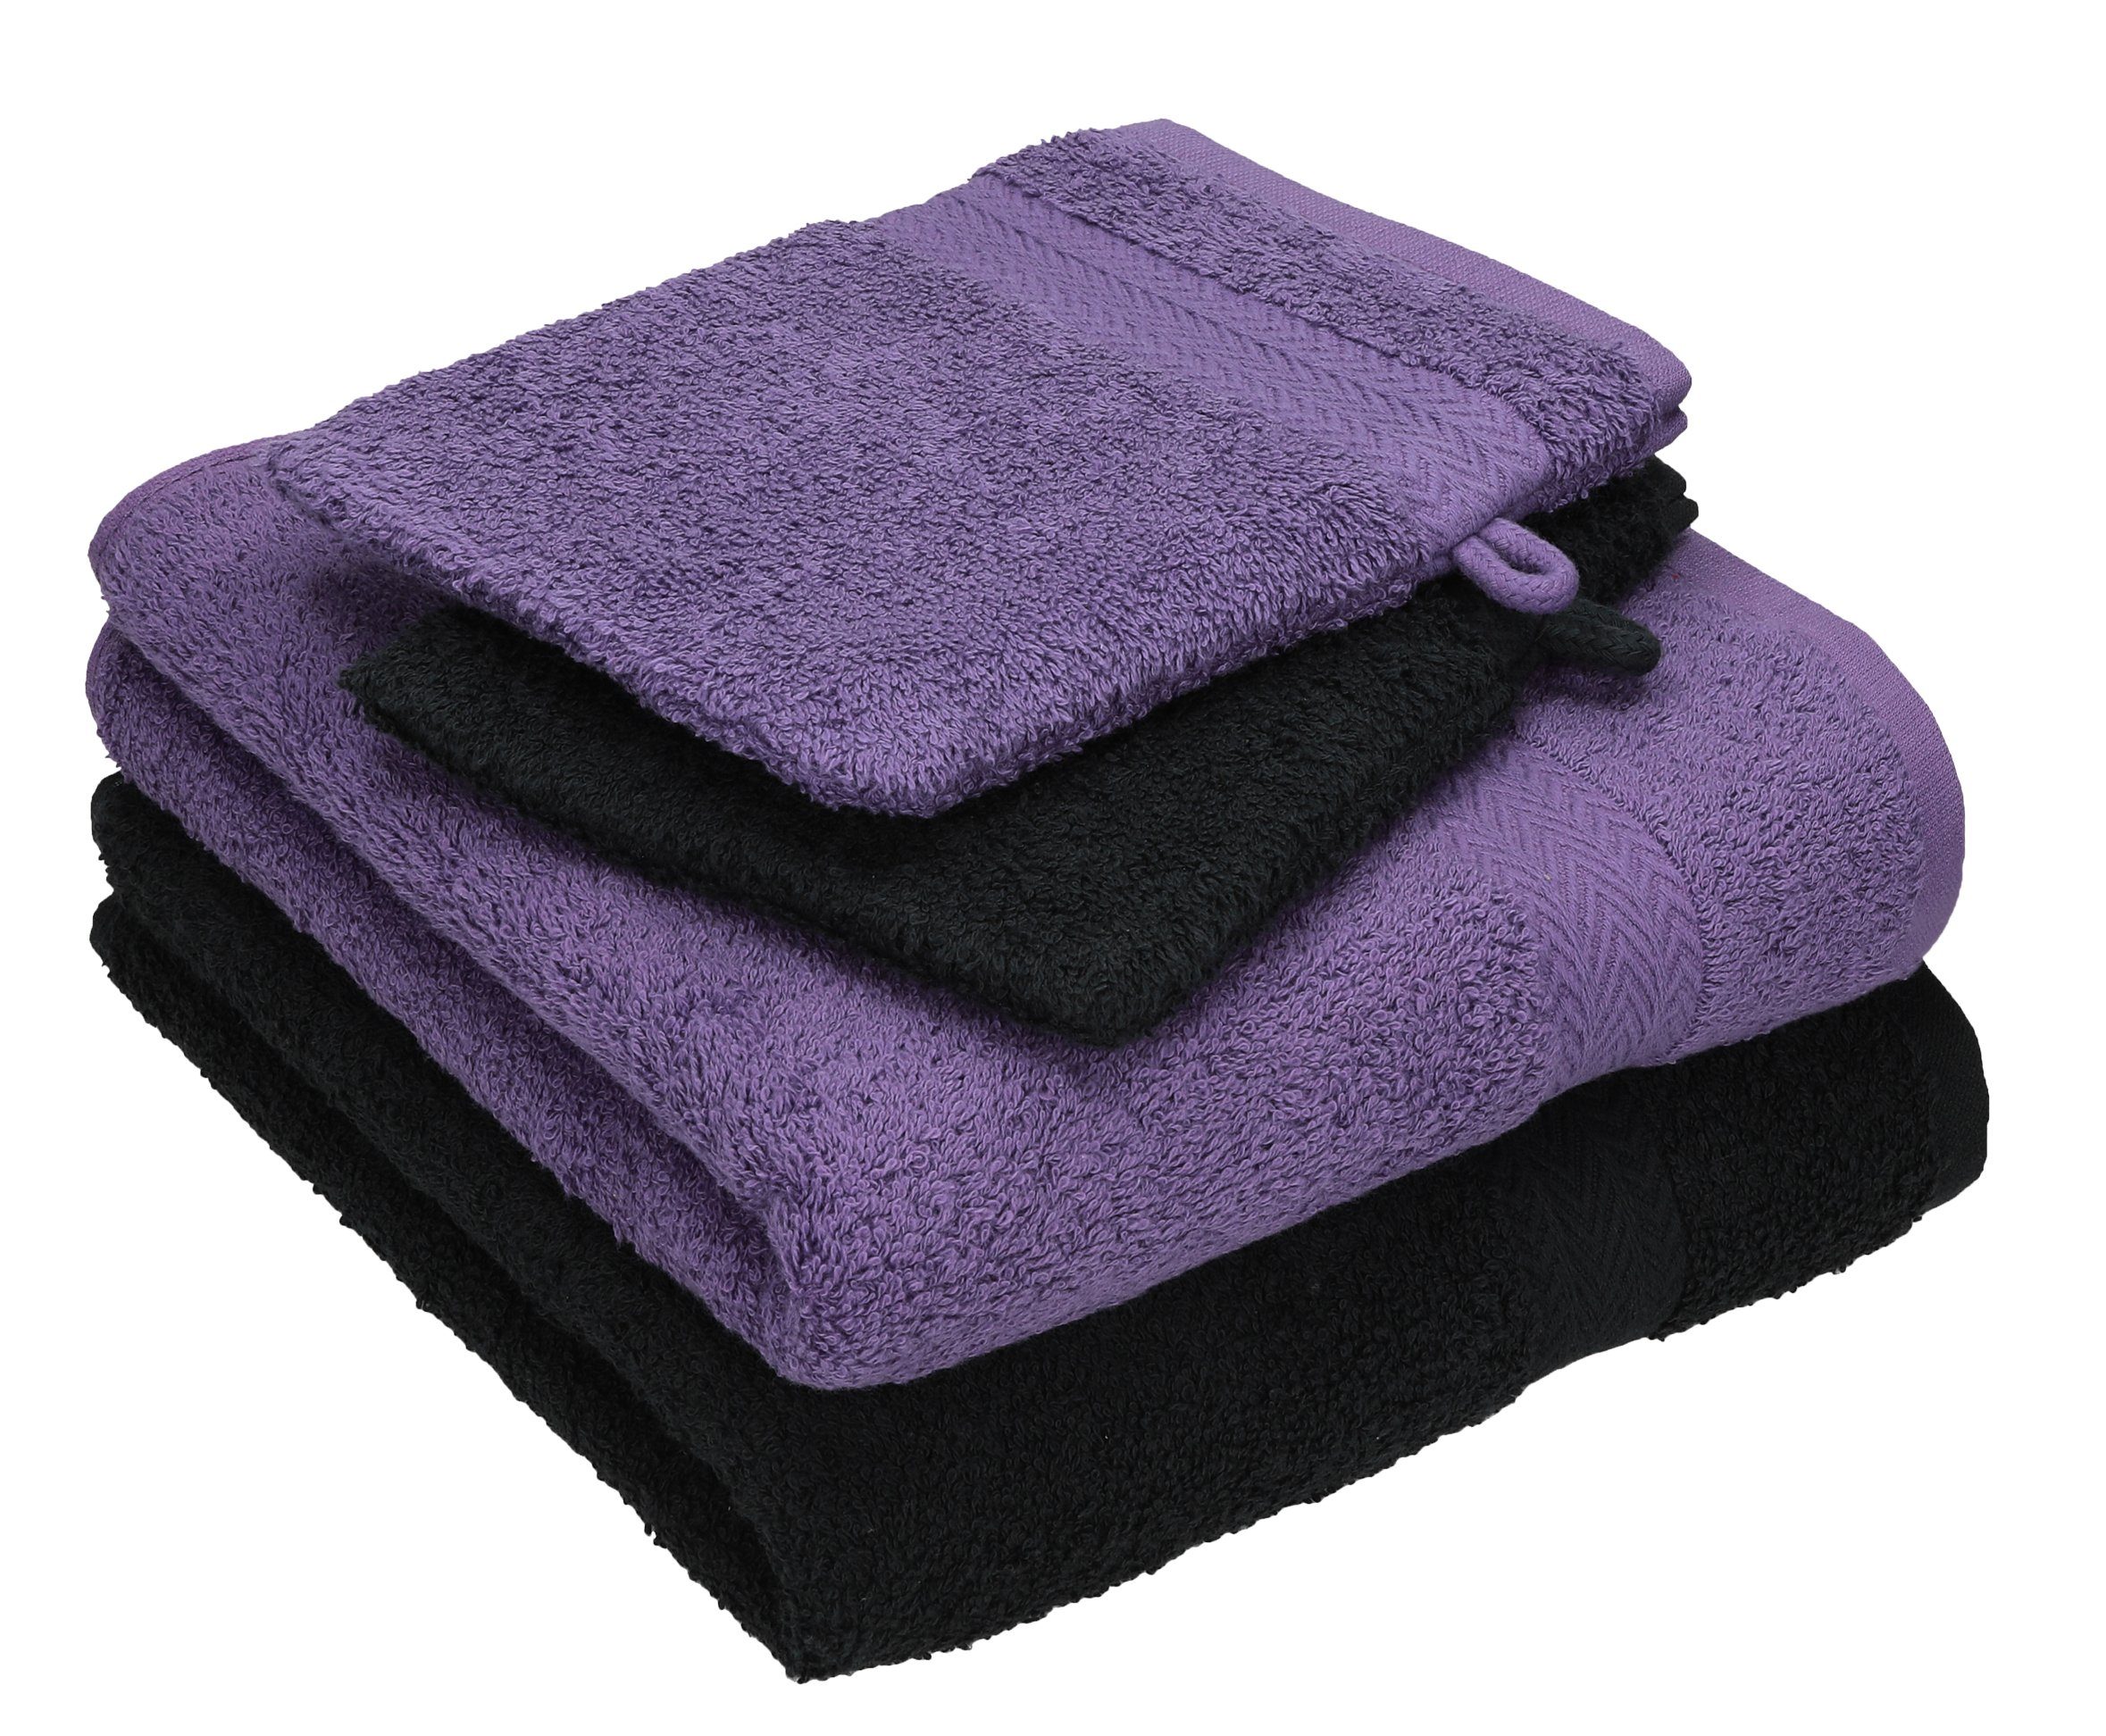 Betz Handtuch Set 4 TLG. Handtuch Set Happy Pack 100% Baumwolle 2 Handtücher 2 Waschhandschuhe, 100% Baumwolle, (4-tlg) lila-schwarz